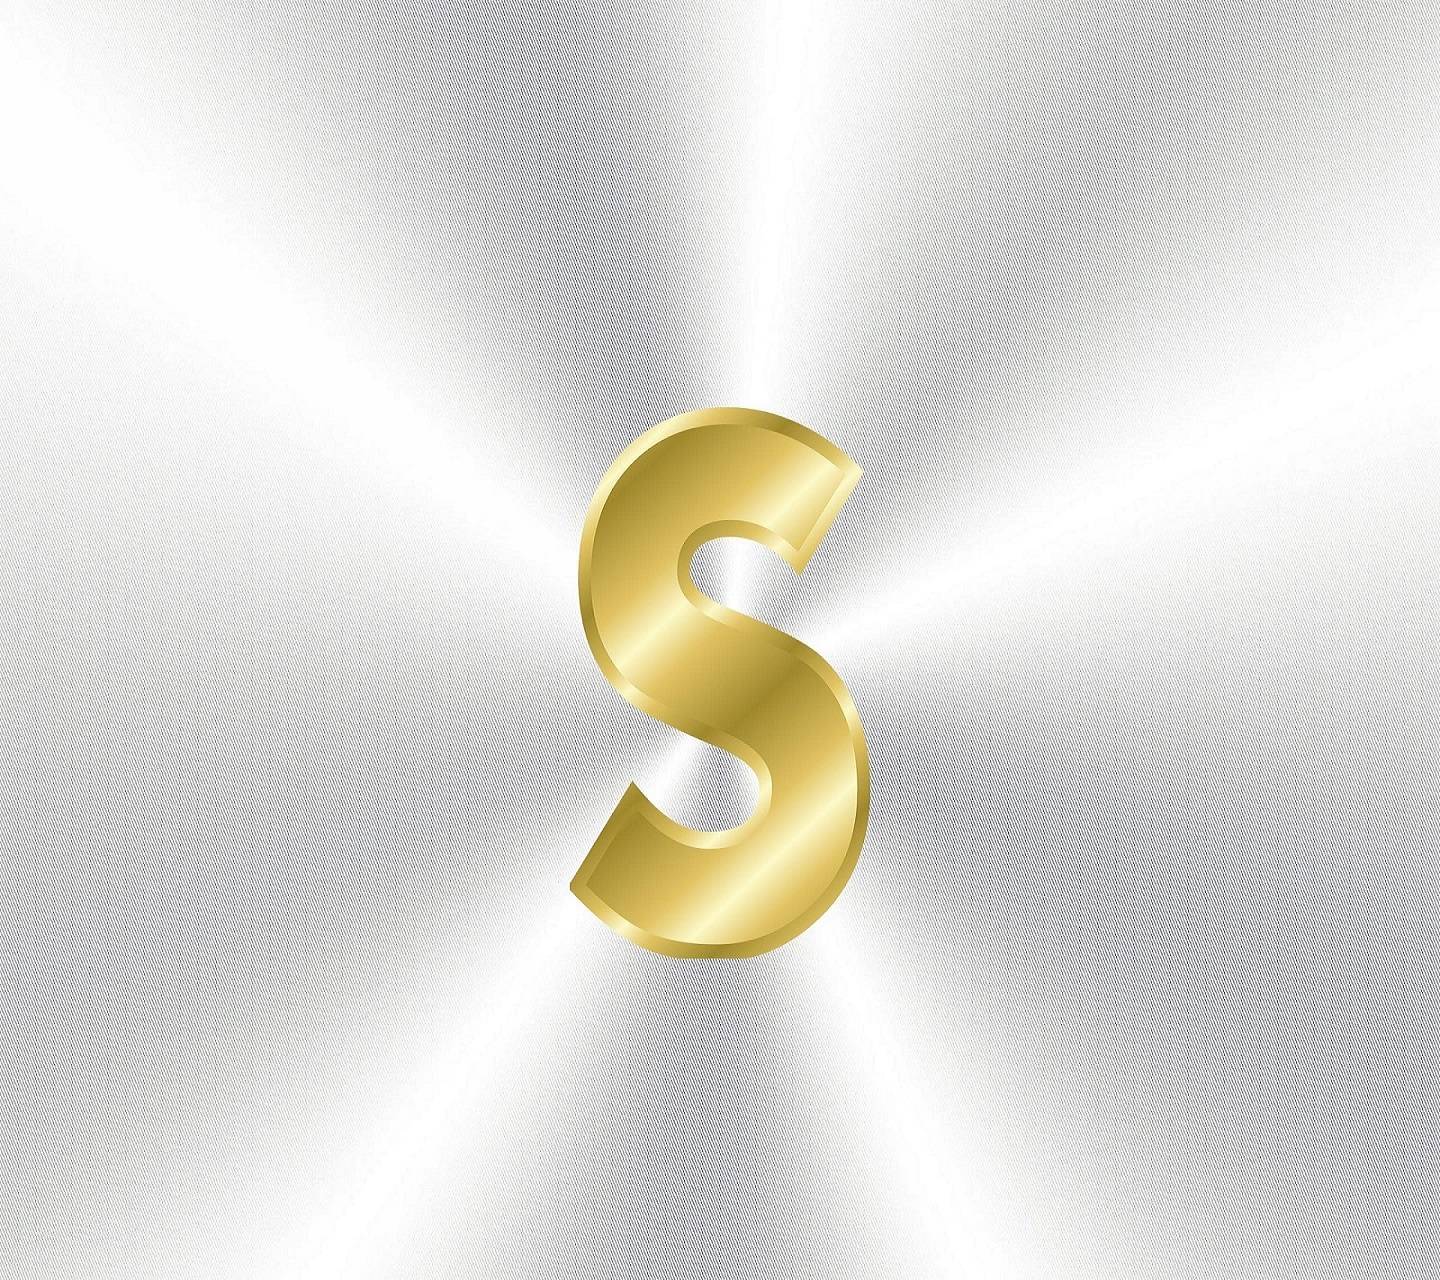 Golden Letter S Logo - Golden Letter S Wallpaper